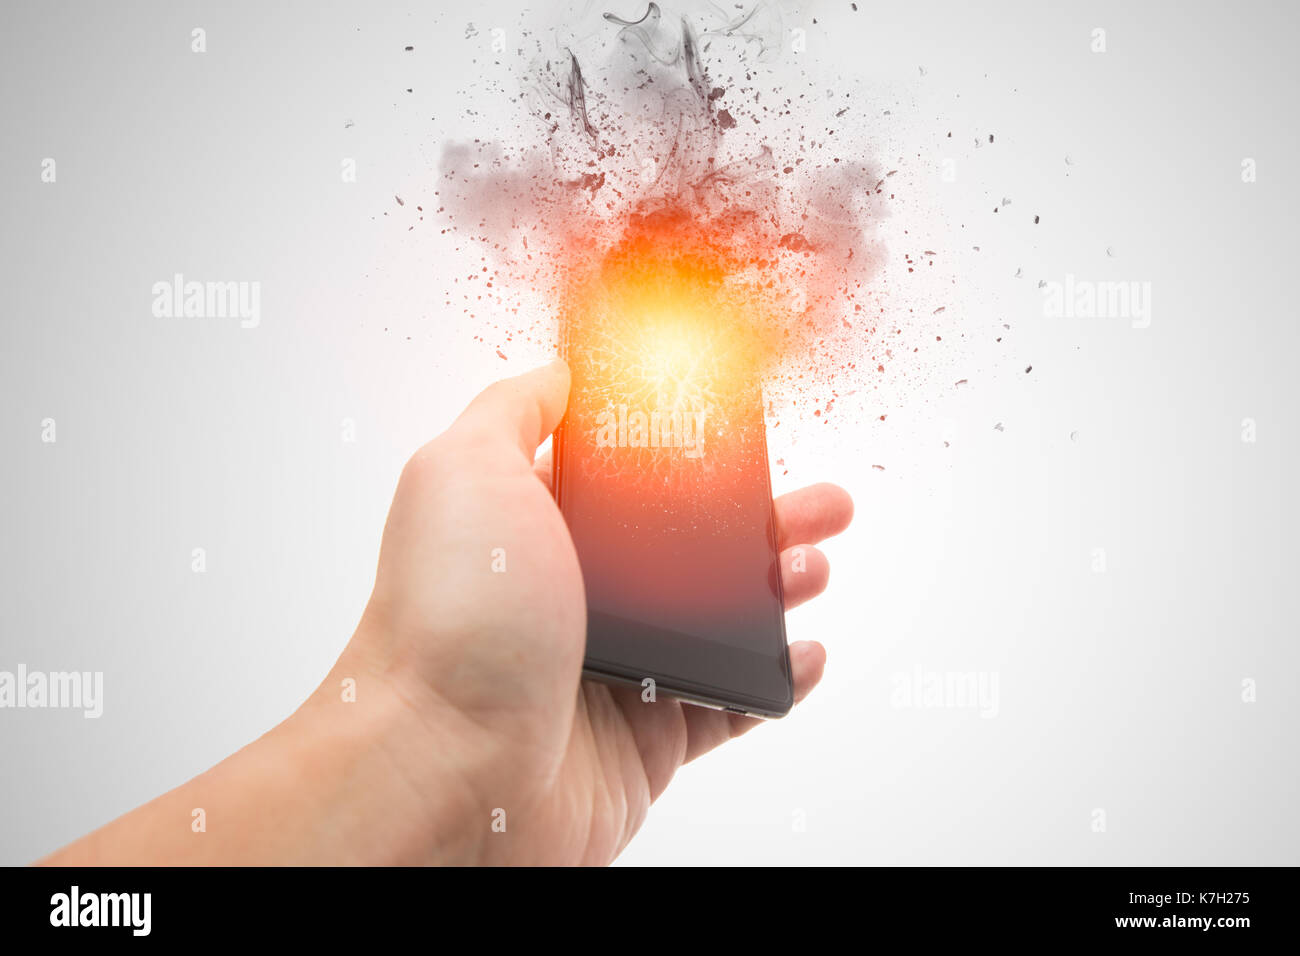 Smartphone-Explosion, Handy Akku oder explosive Handy sprengen oder explodieren, platzen Feuer ausbrennen intelligente Geräte mit Dispersion Wirkung. Stockfoto